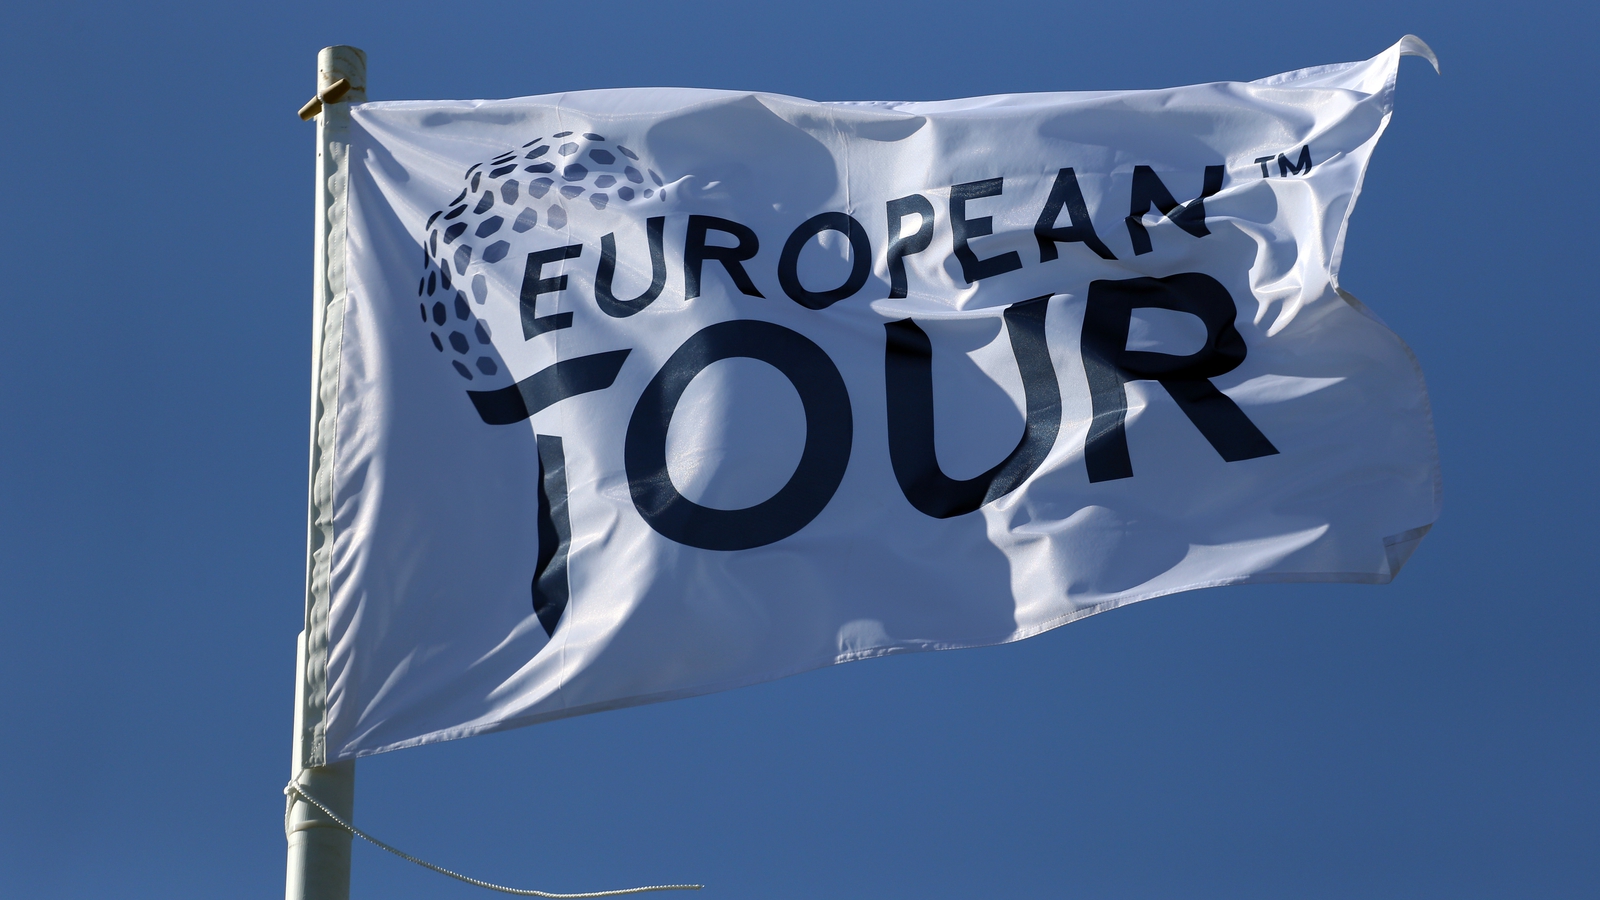 dp world tour irish open 2022